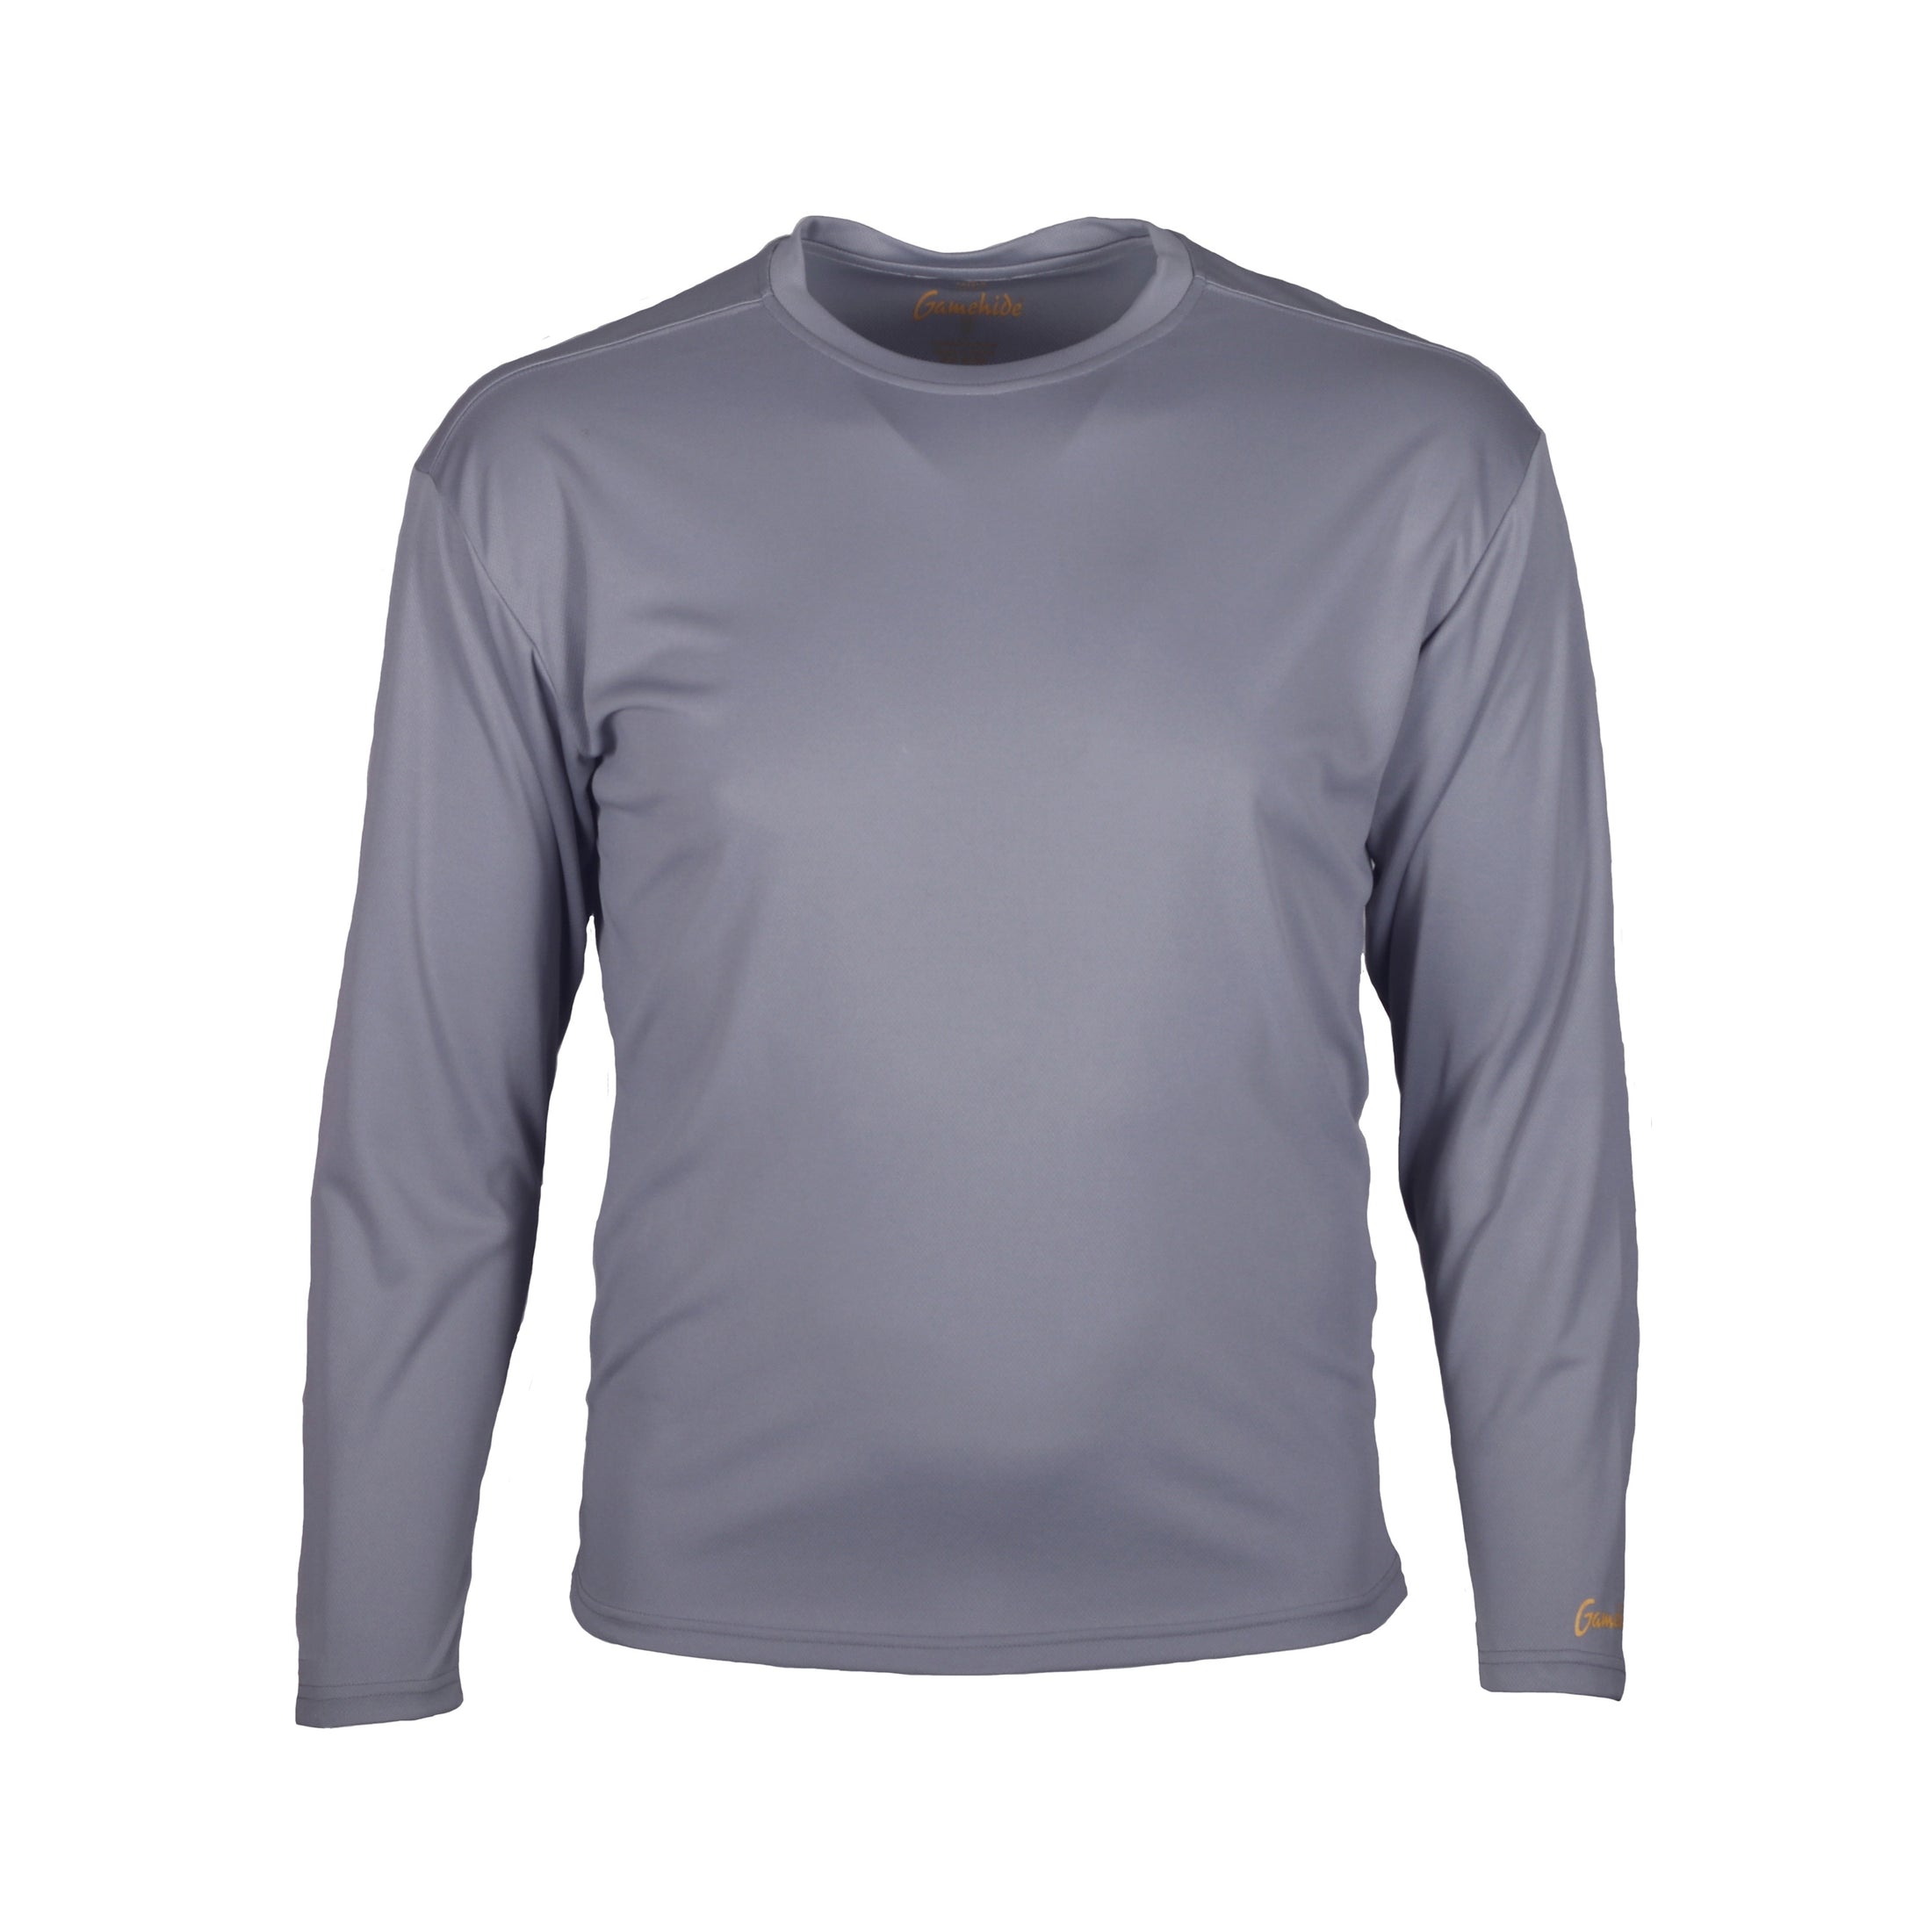 gamehide ElimiTick Long Sleeve Tech Shirt front (grey)